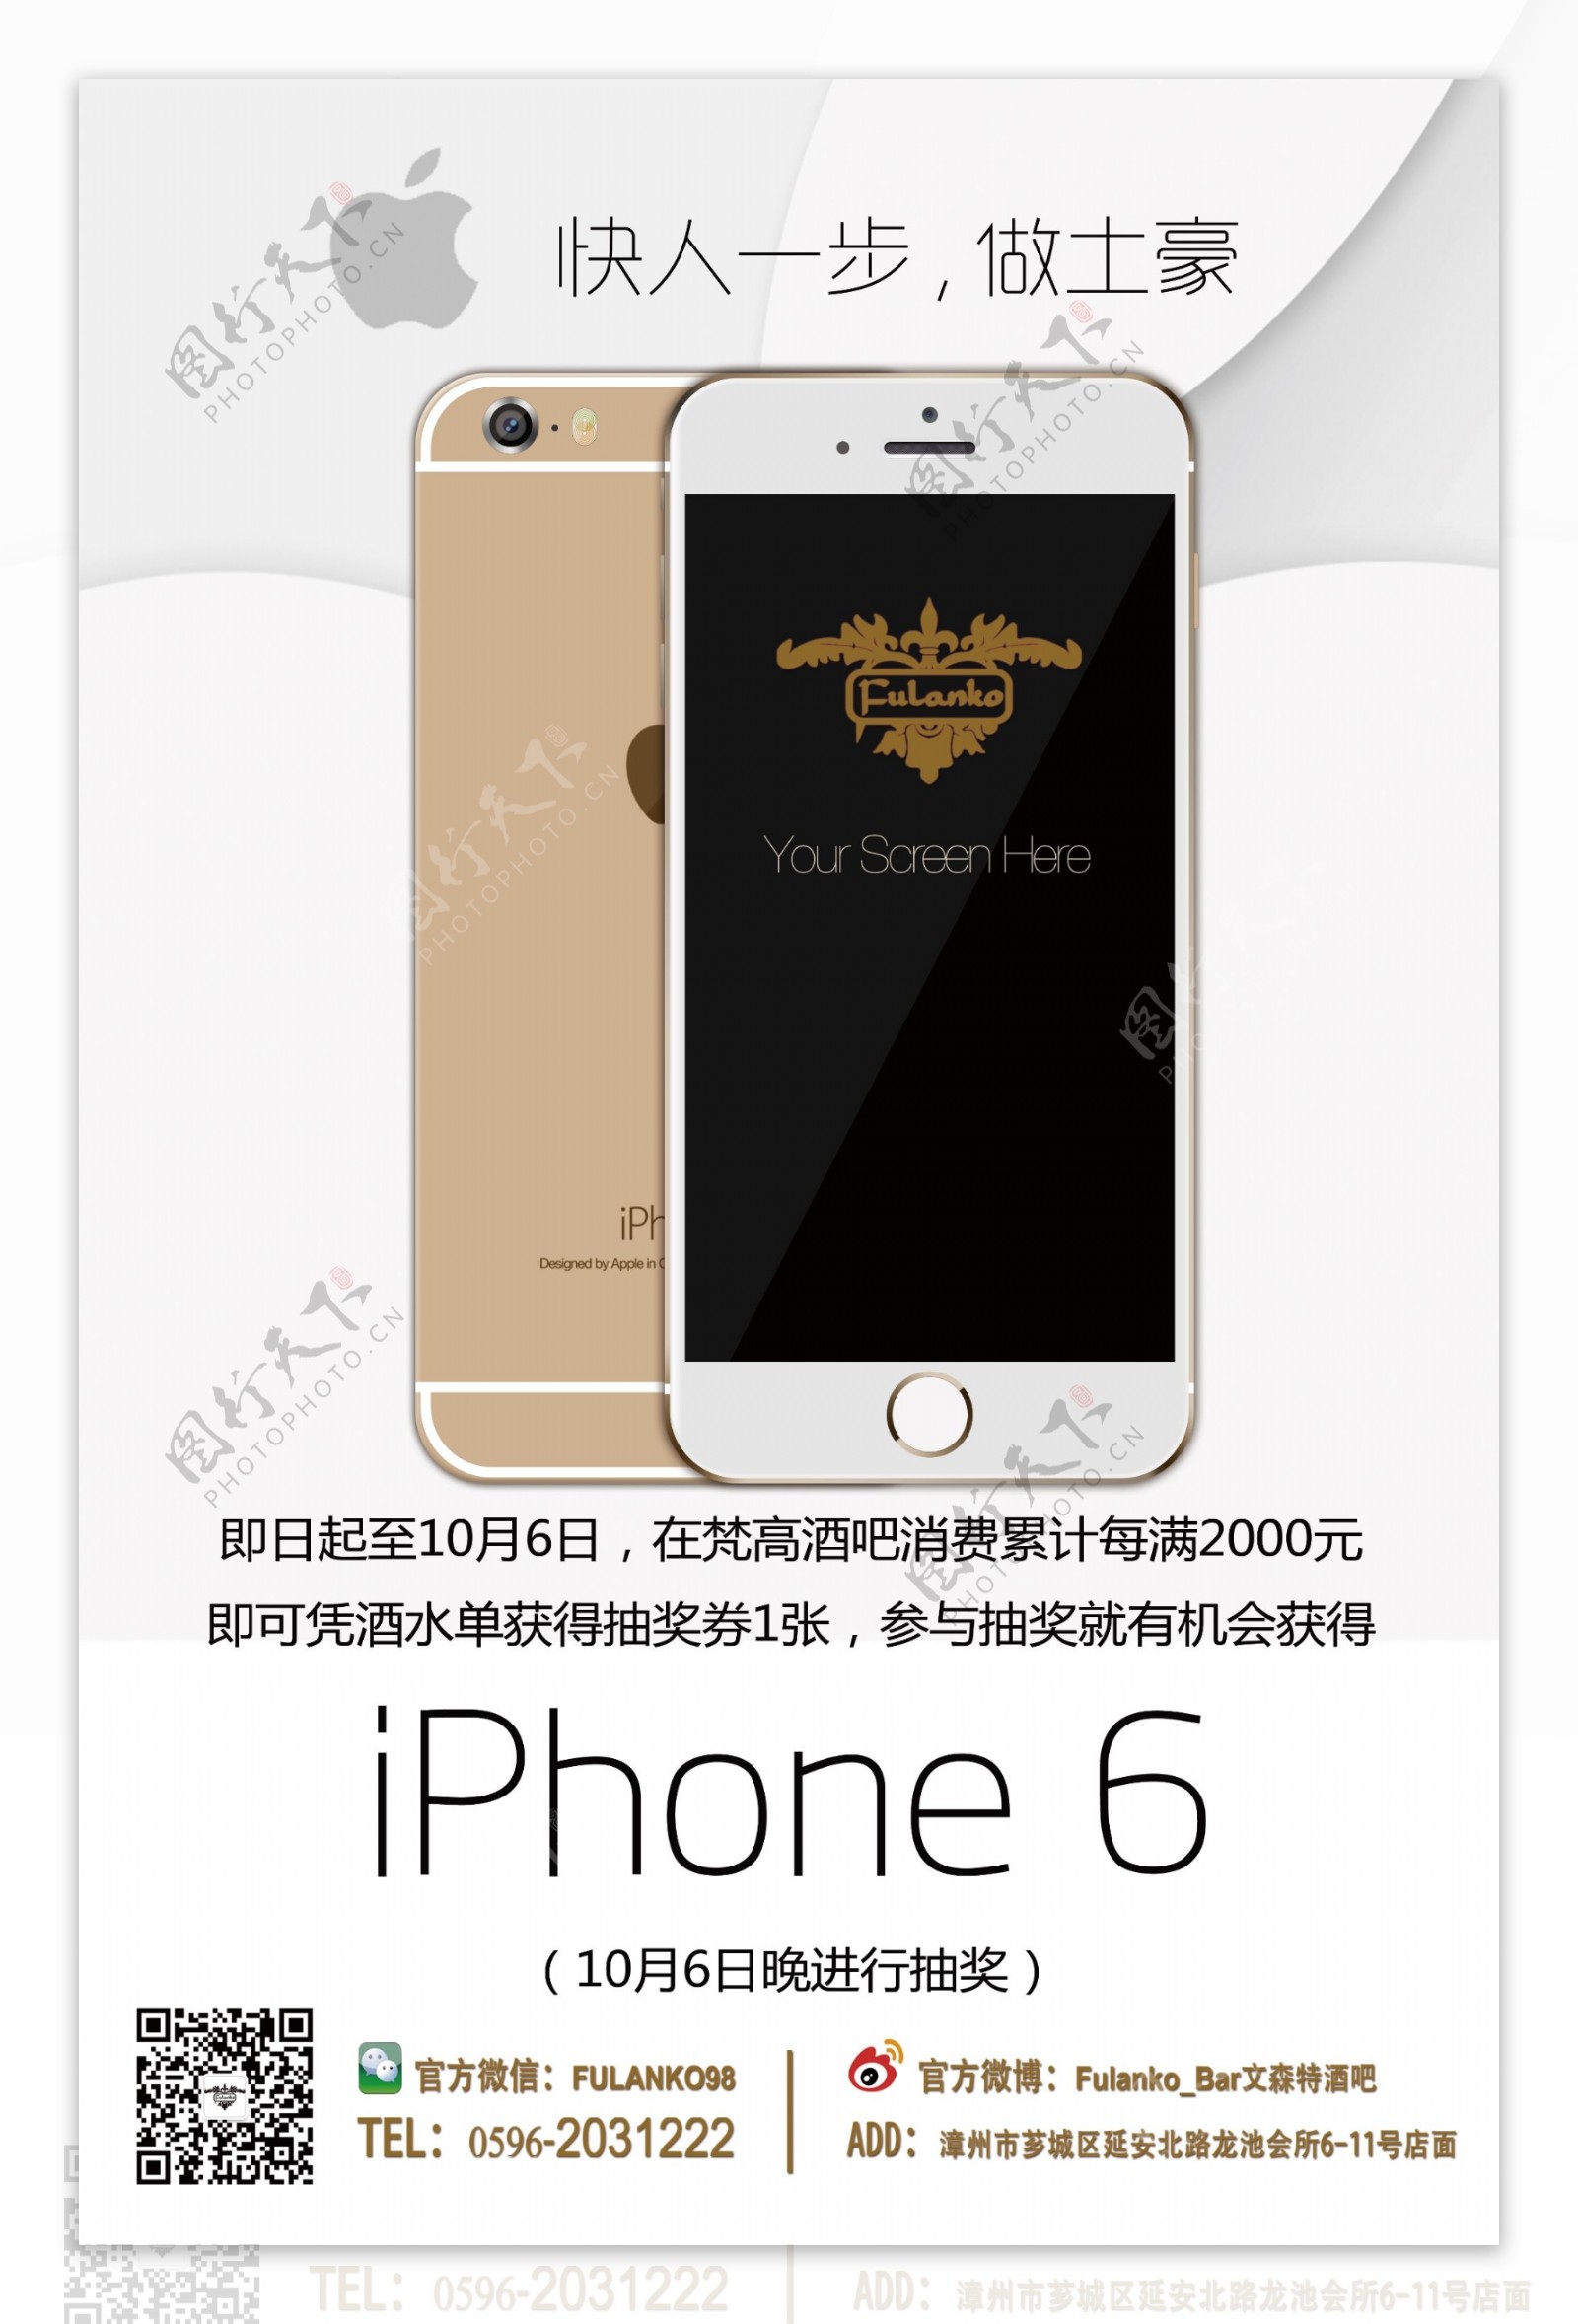 iPhone6抽奖海报图片